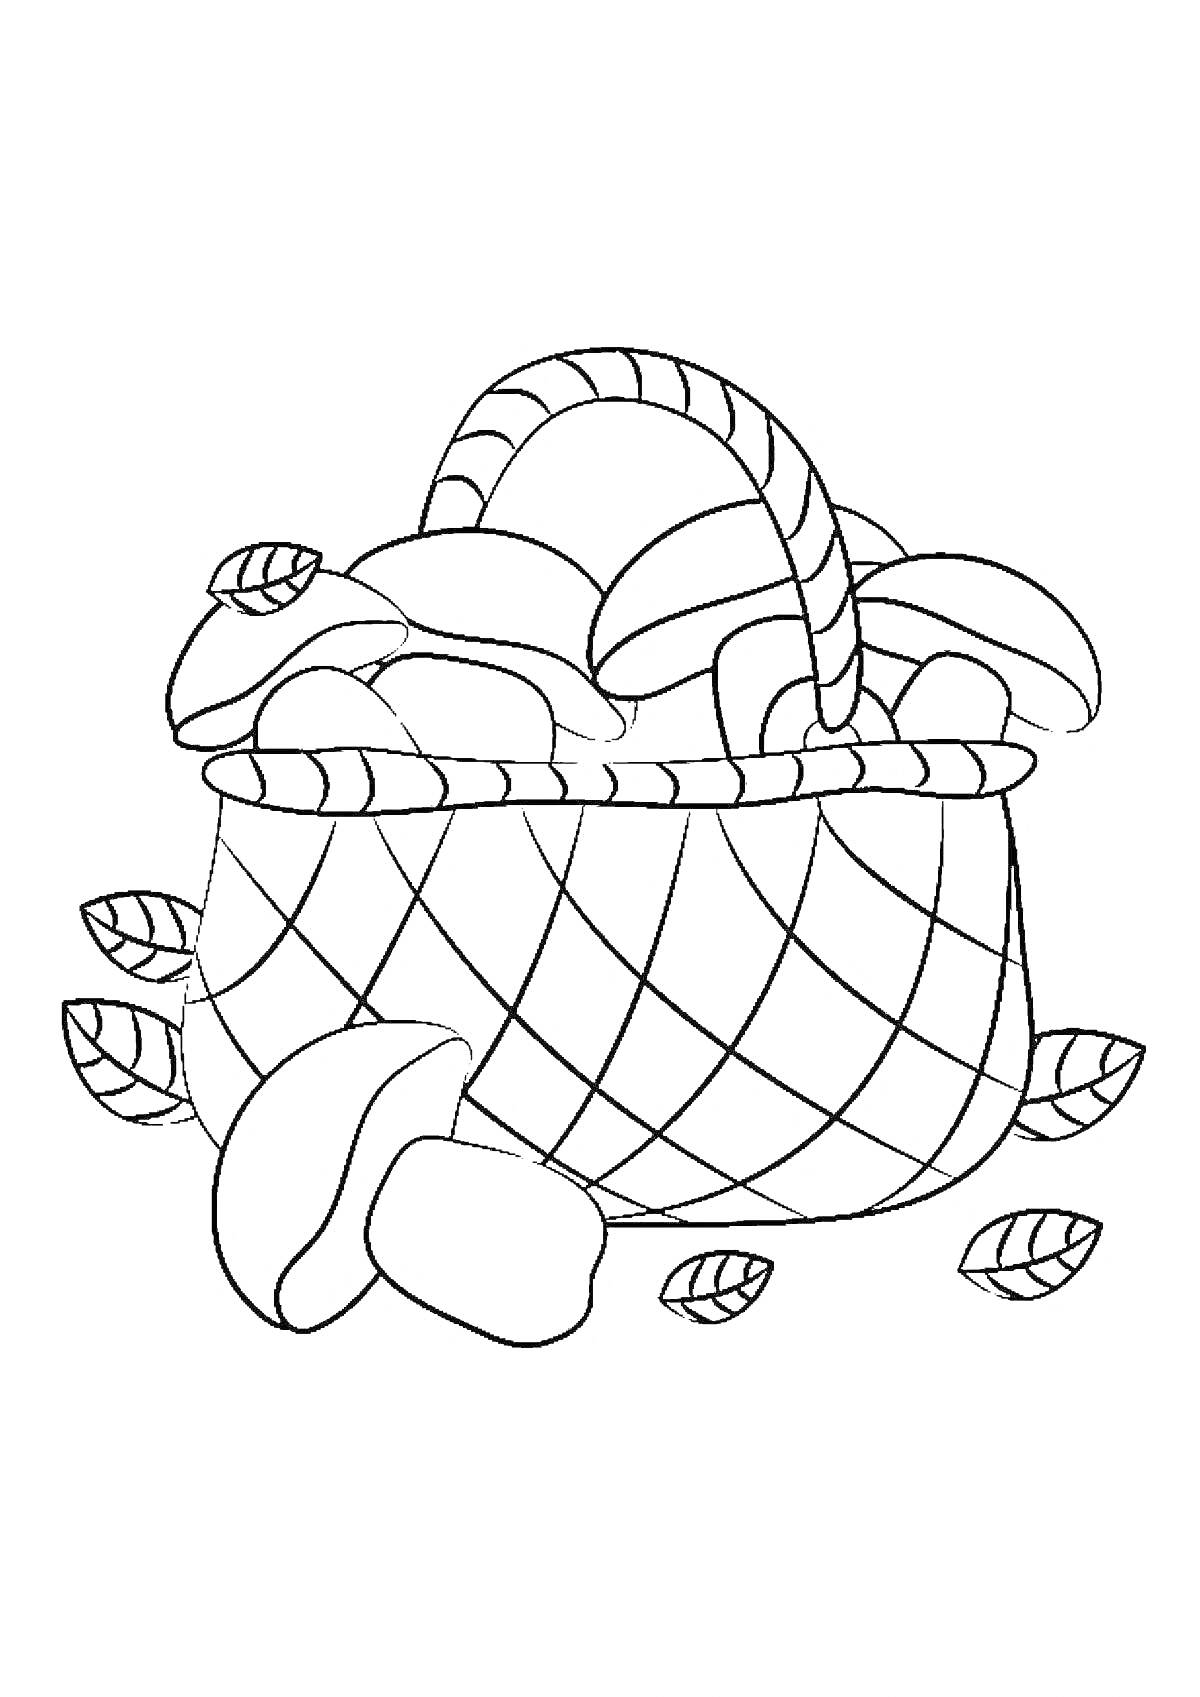 Раскраска Корзина с яблоками и листьями